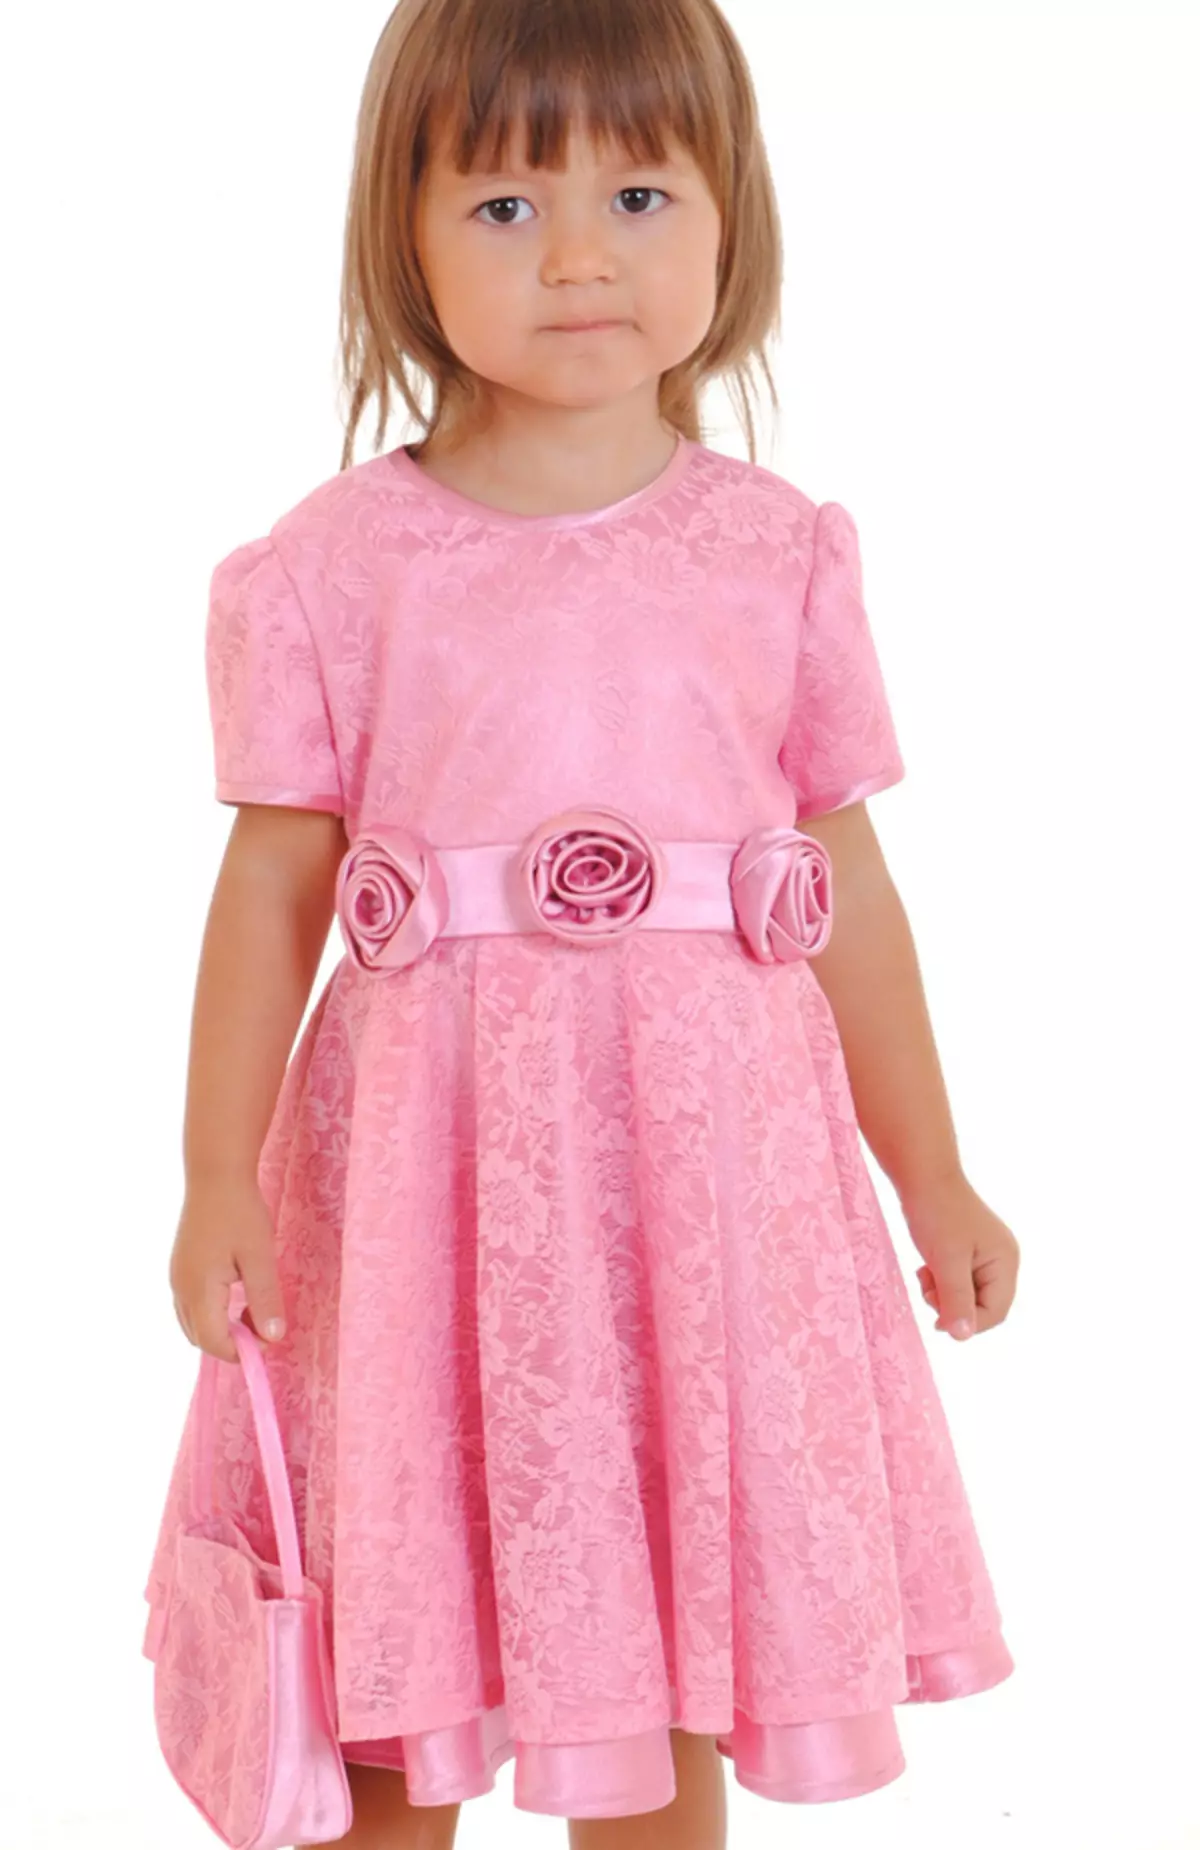 Cutie Susie (52 Fotos): Schuluniform, Kleider, Kostüme und andere Kinderbekleidung für Mädchen 7 Jahre, Produktbewertungen 3792_39